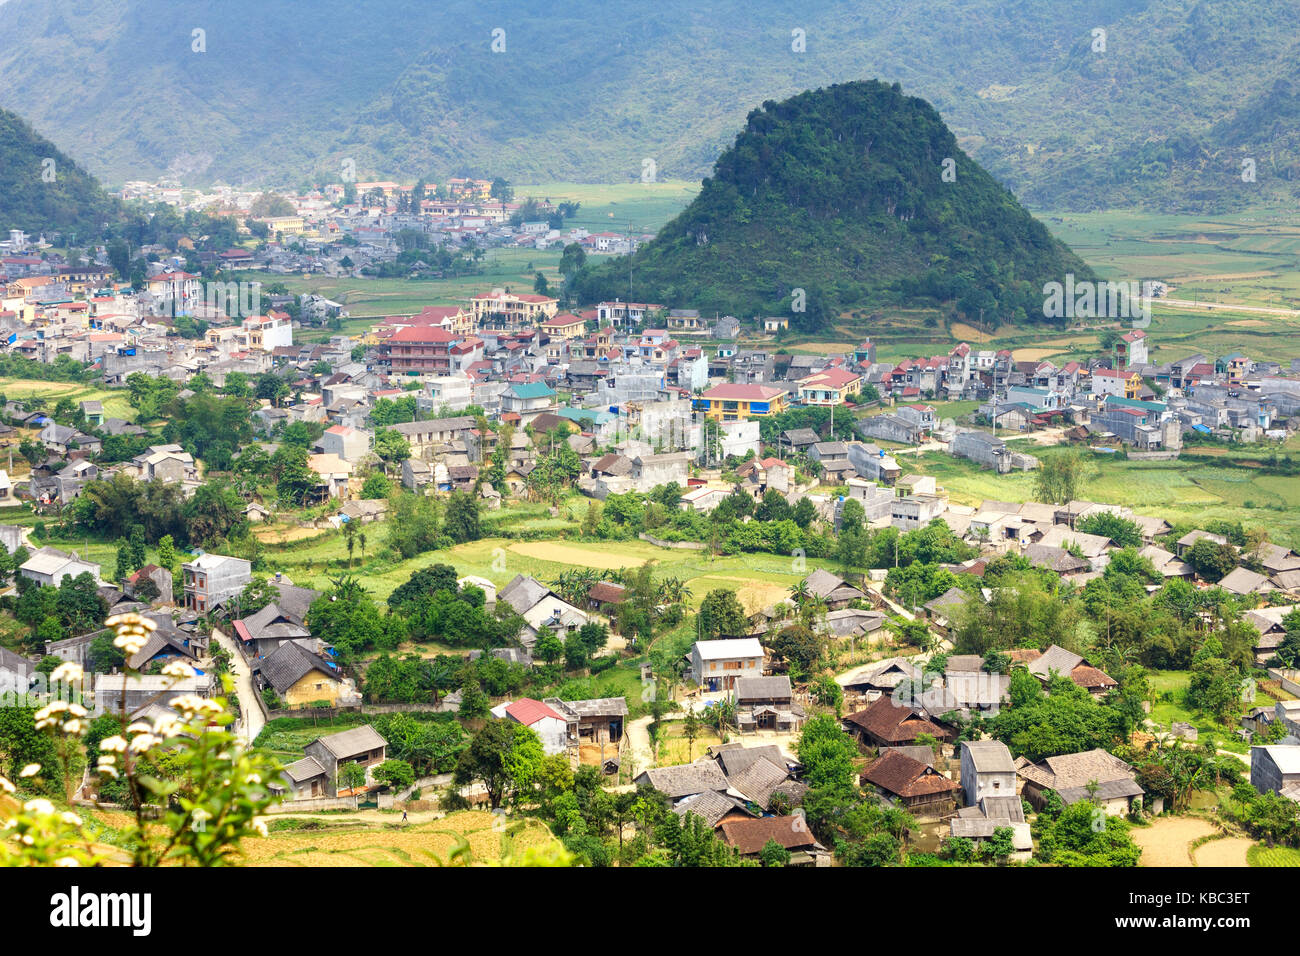 Tam Sohn Stadt, Quan ba, Ha Giang, Vietnam. Quan ba ist ein Landkreis in der Provinz Ha Giang in der nordöstlichen Region von Vietnam. Stockfoto